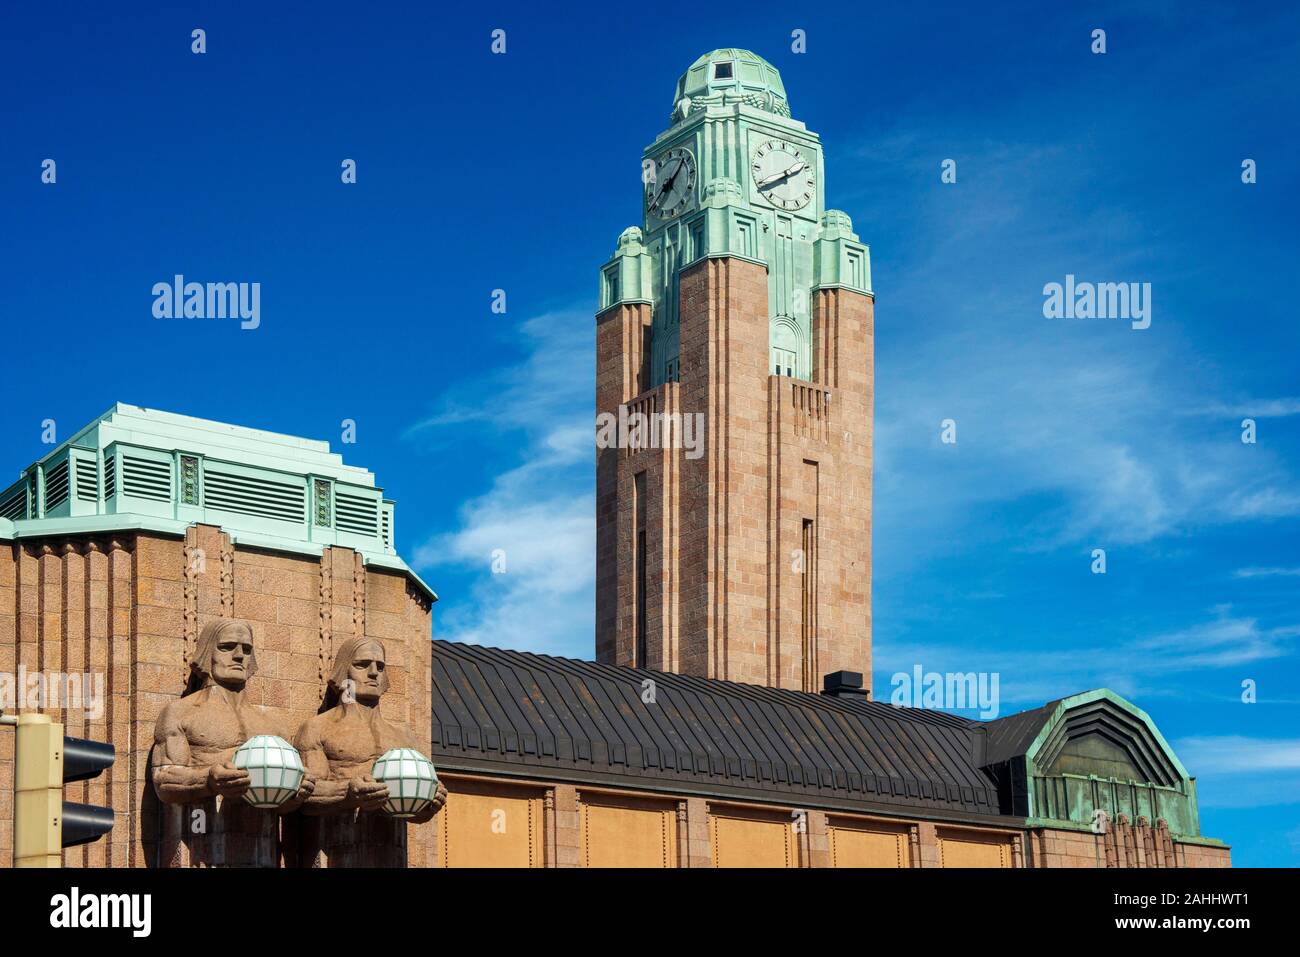 Estación de ferrocarril de Helsinki, arquitecto Saarinen, con cifras por Wikstrom Foto de stock